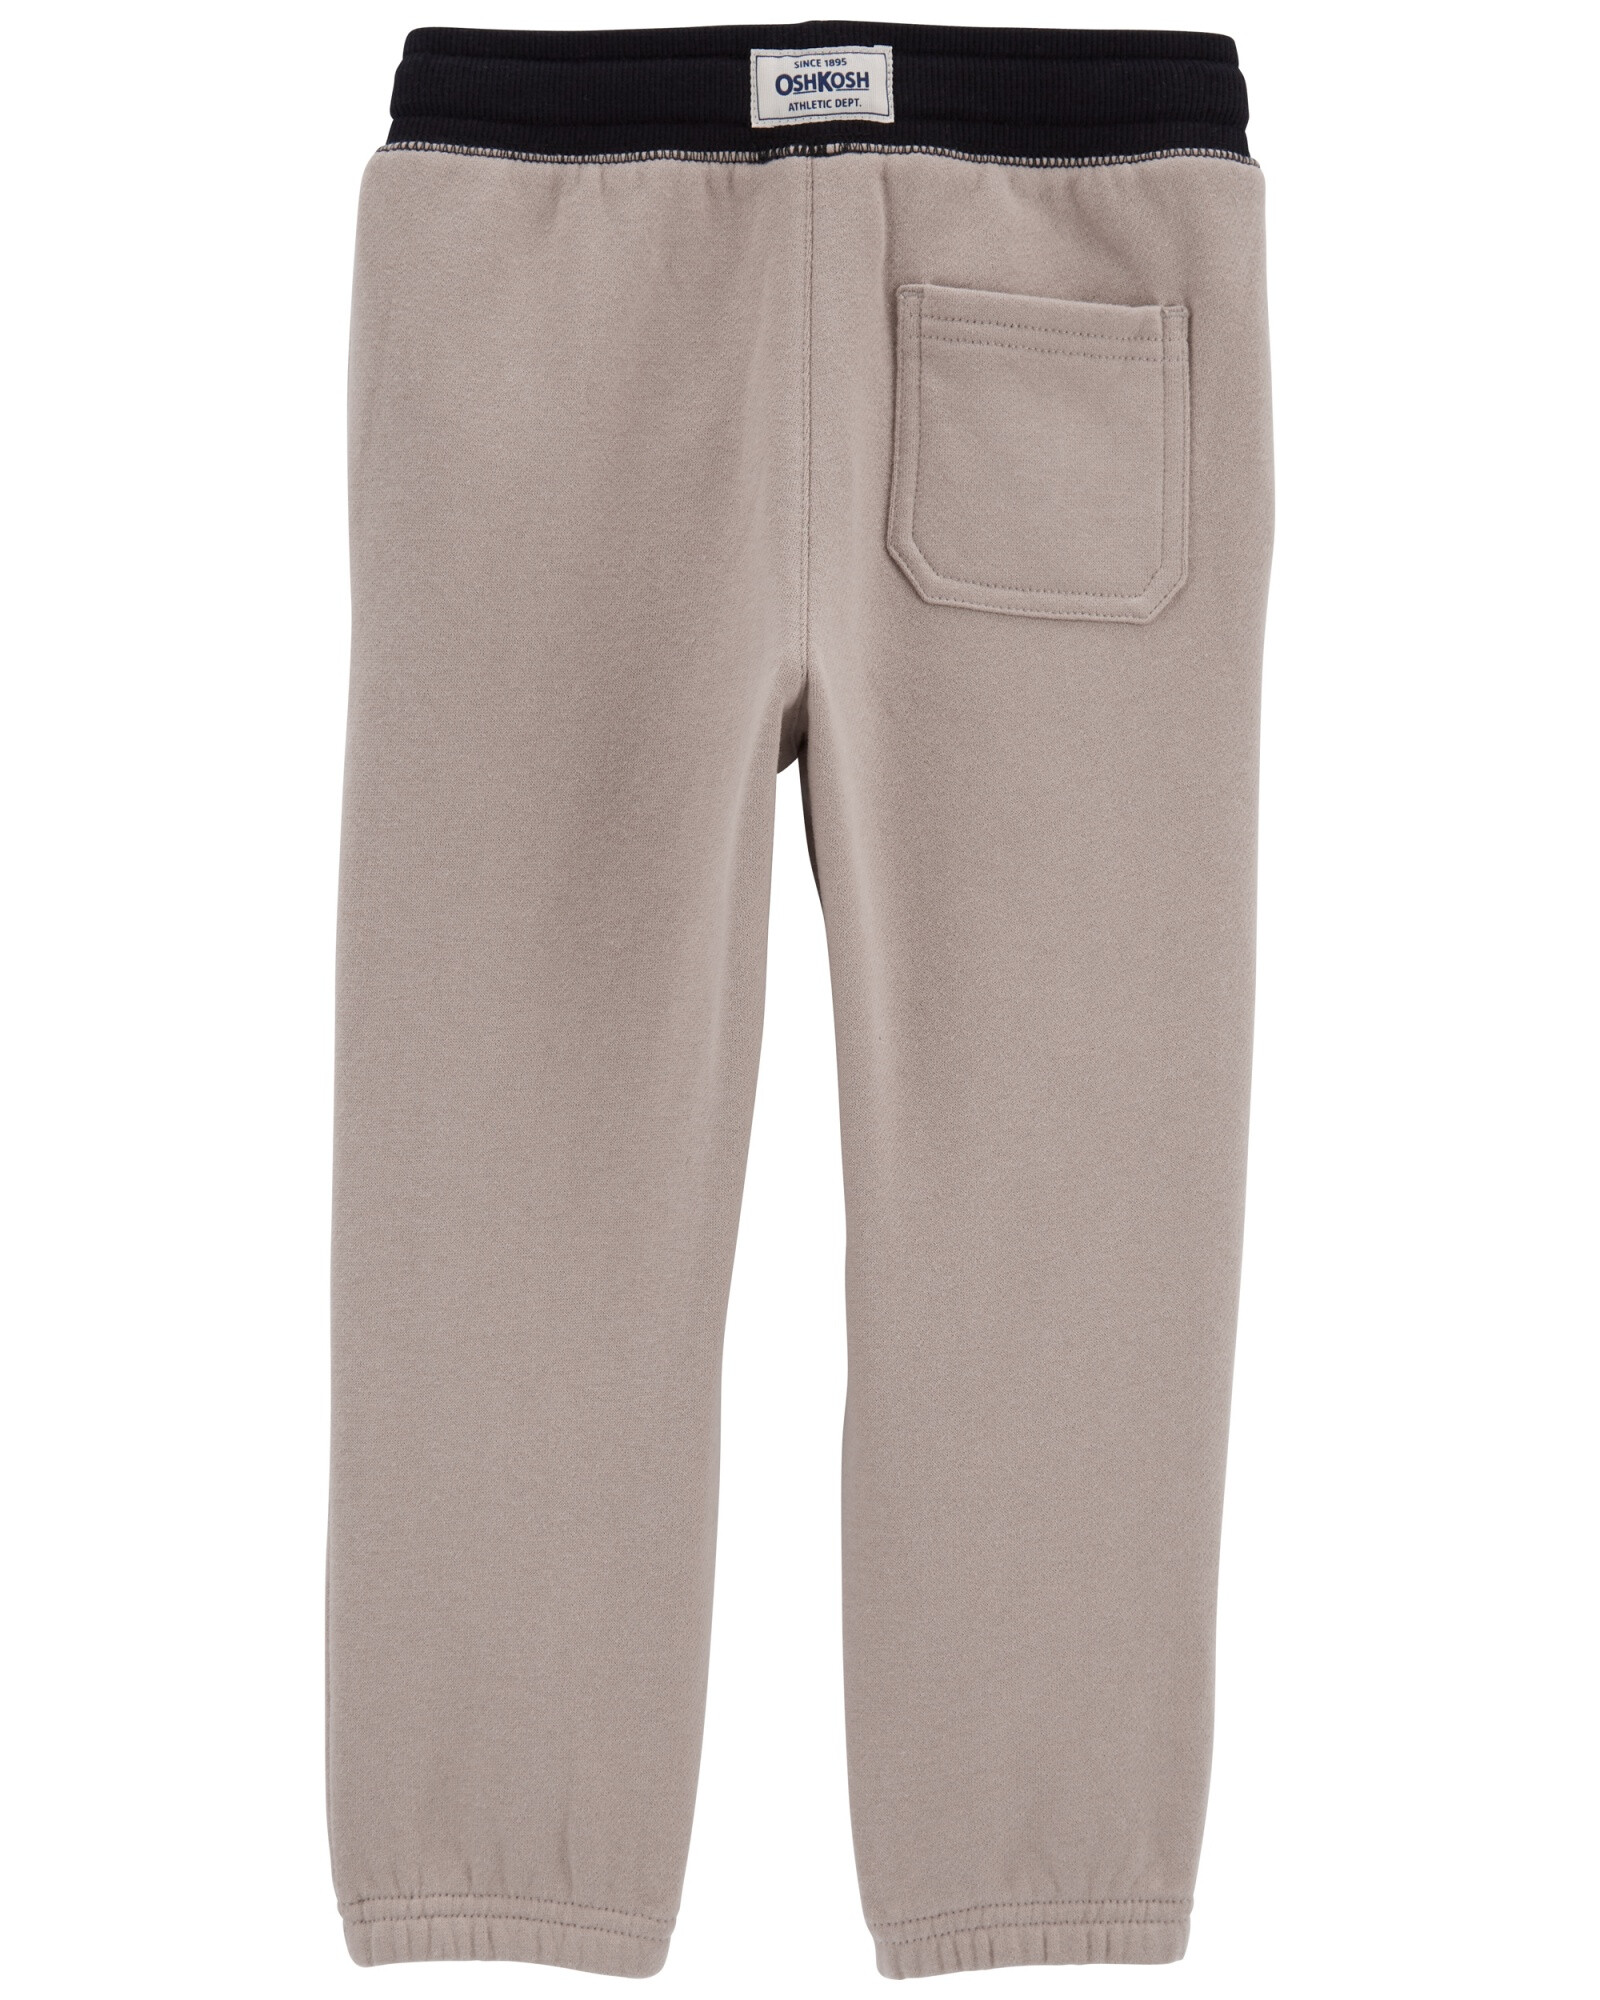 Pantalón deportivo de algodón, khaki Sin color